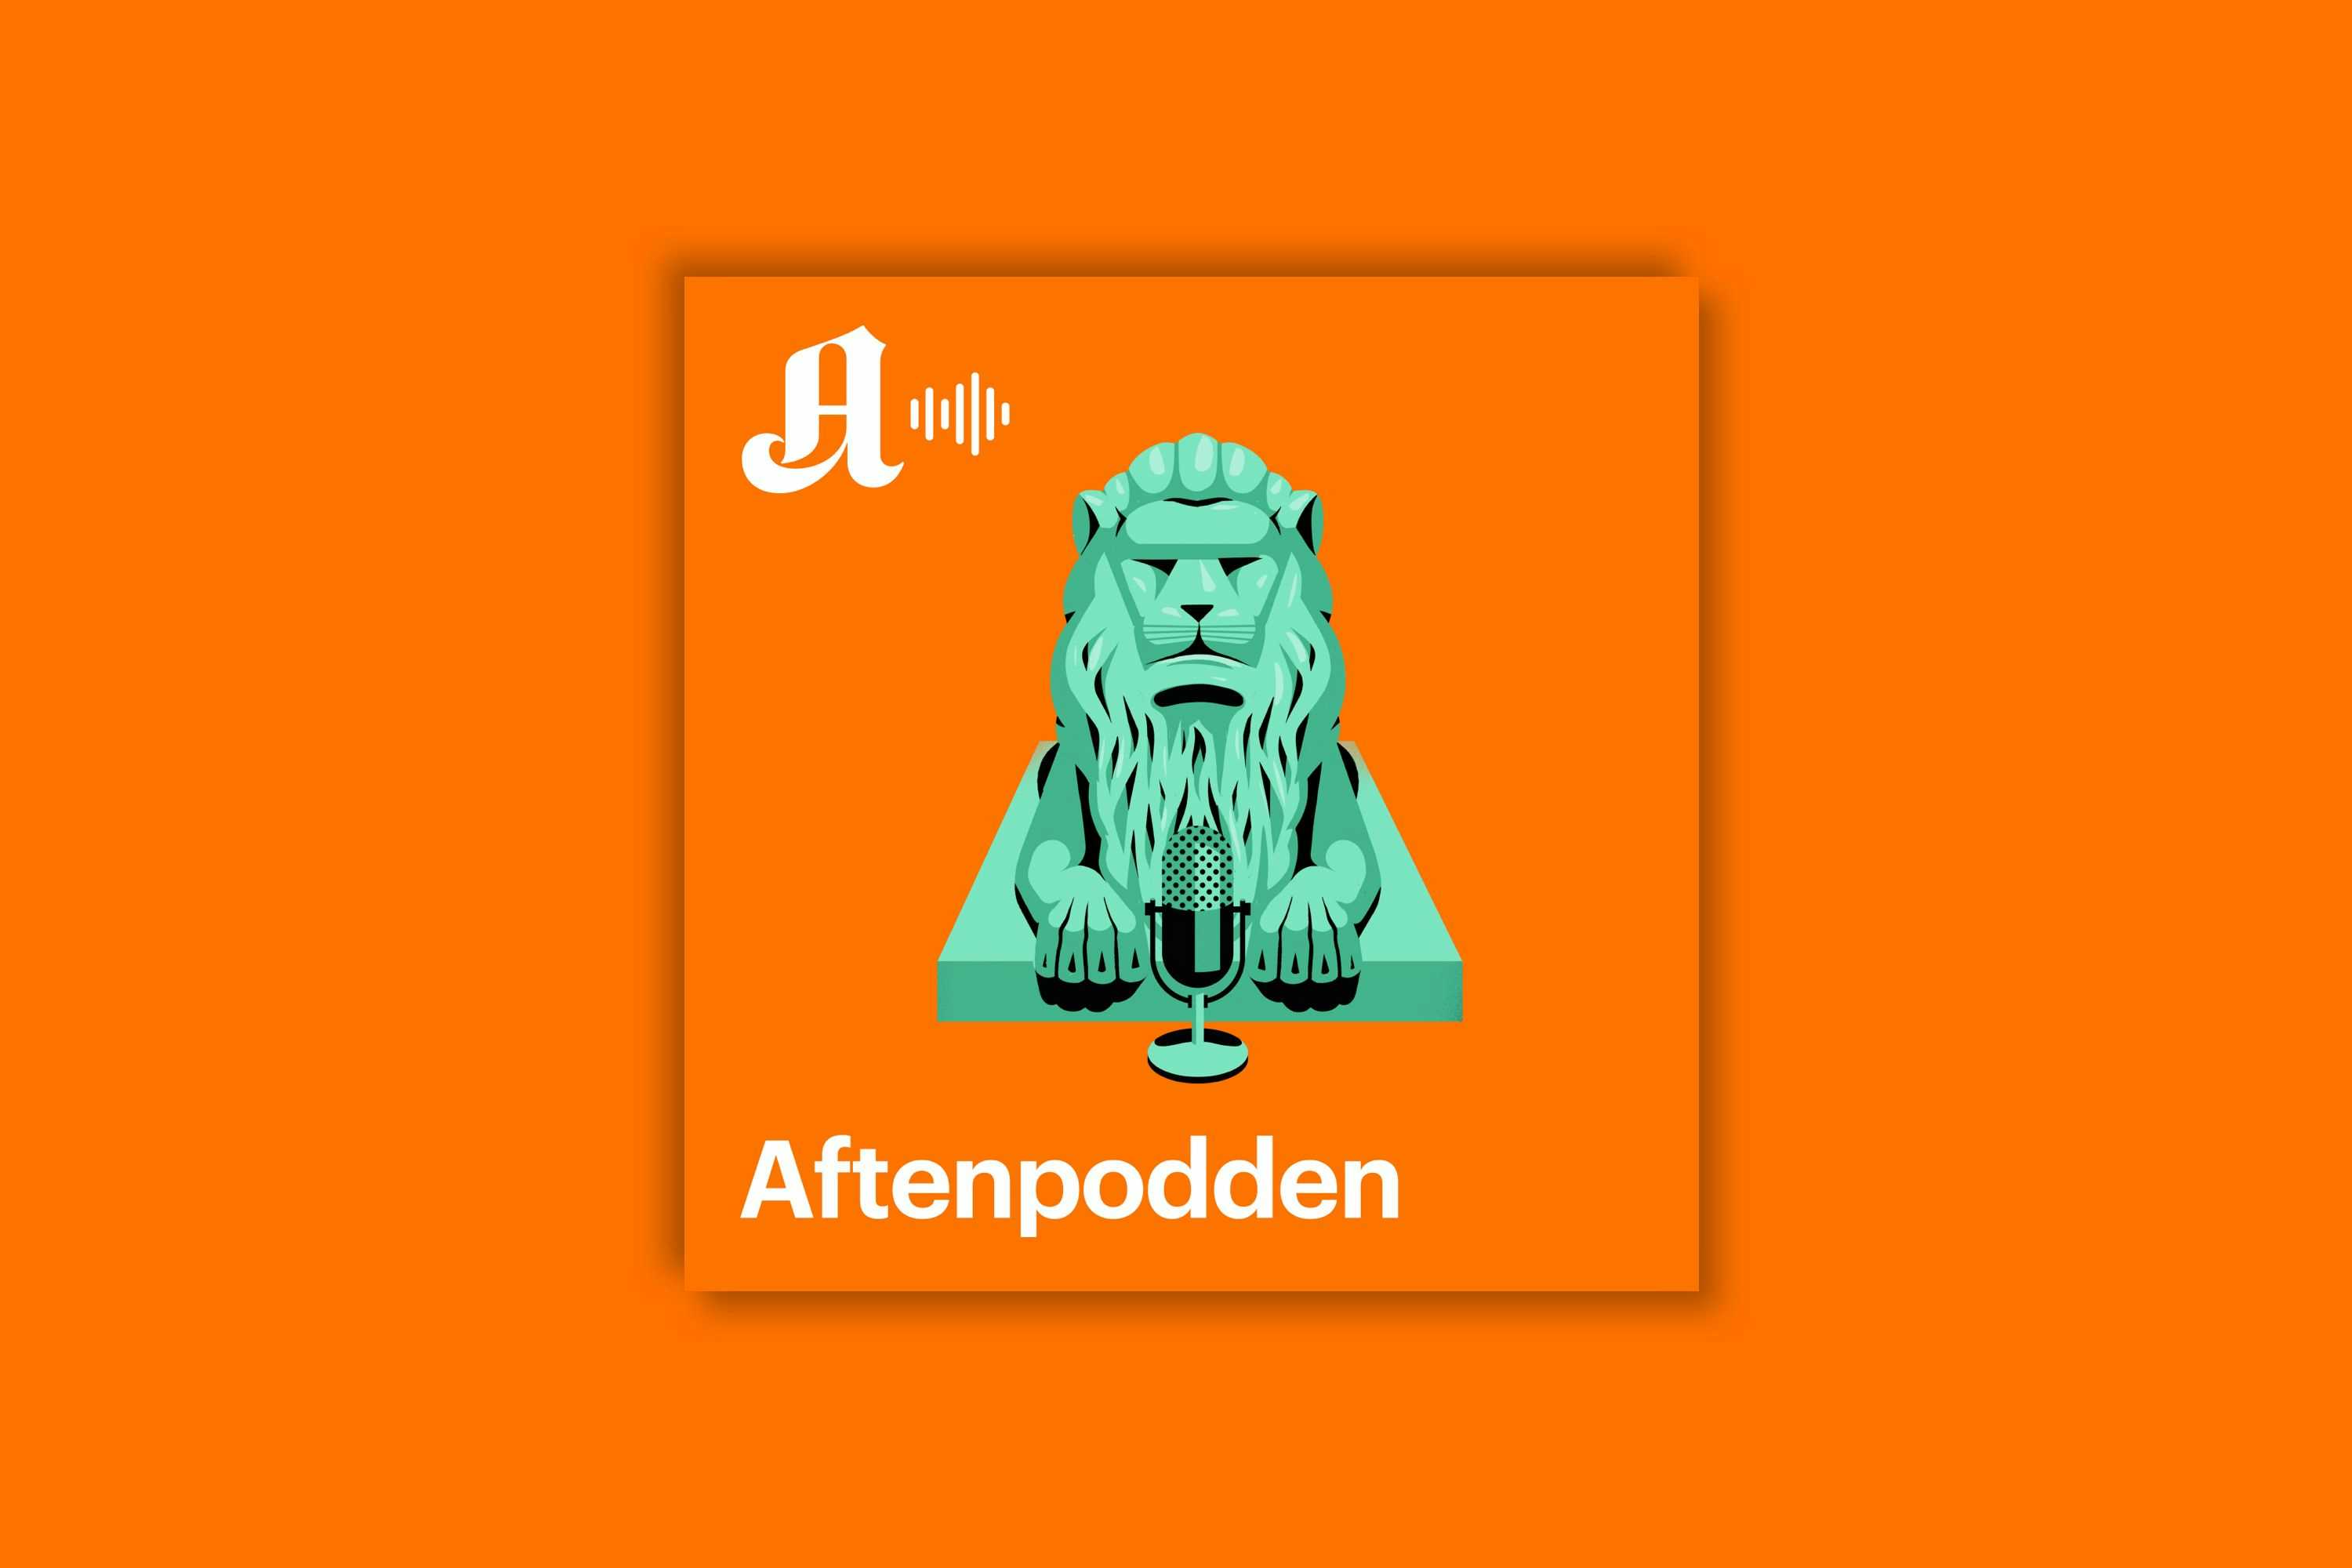 En løve med mikrofon, logoen til podcasten Aftenpodden